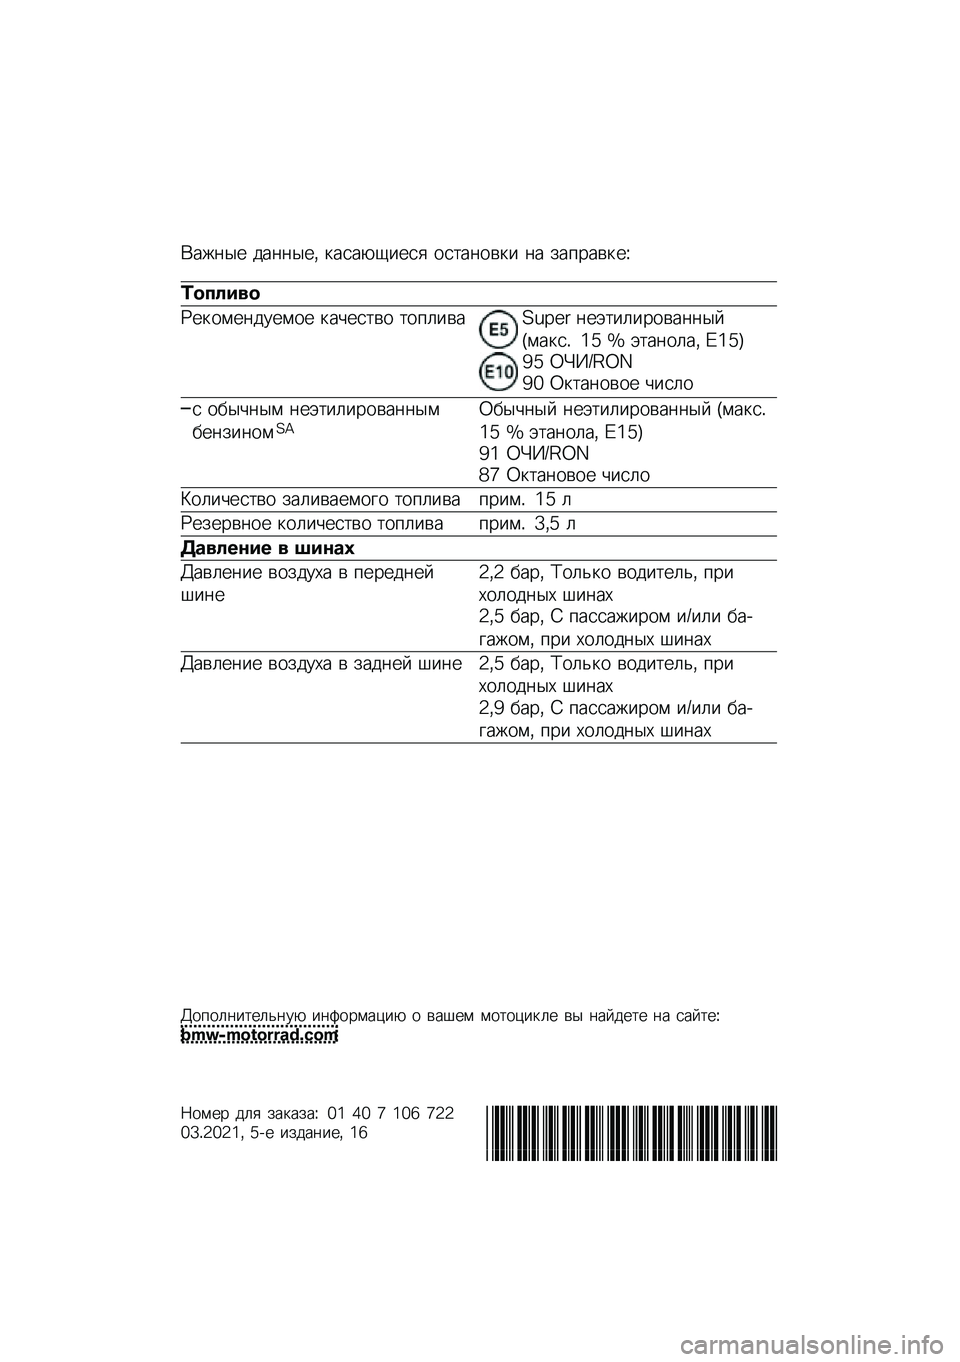 BMW MOTORRAD F 850 GS 2021  Руководство по эксплуатации (in Russian) �(���	�� ���	�	���* �
����-�1���� ���
��	���
� �	� ���%����
��M
�	������
�N��
����	������ �
��&���
�� �
��%�����O�P�Q�:�; �	��+�
��������	